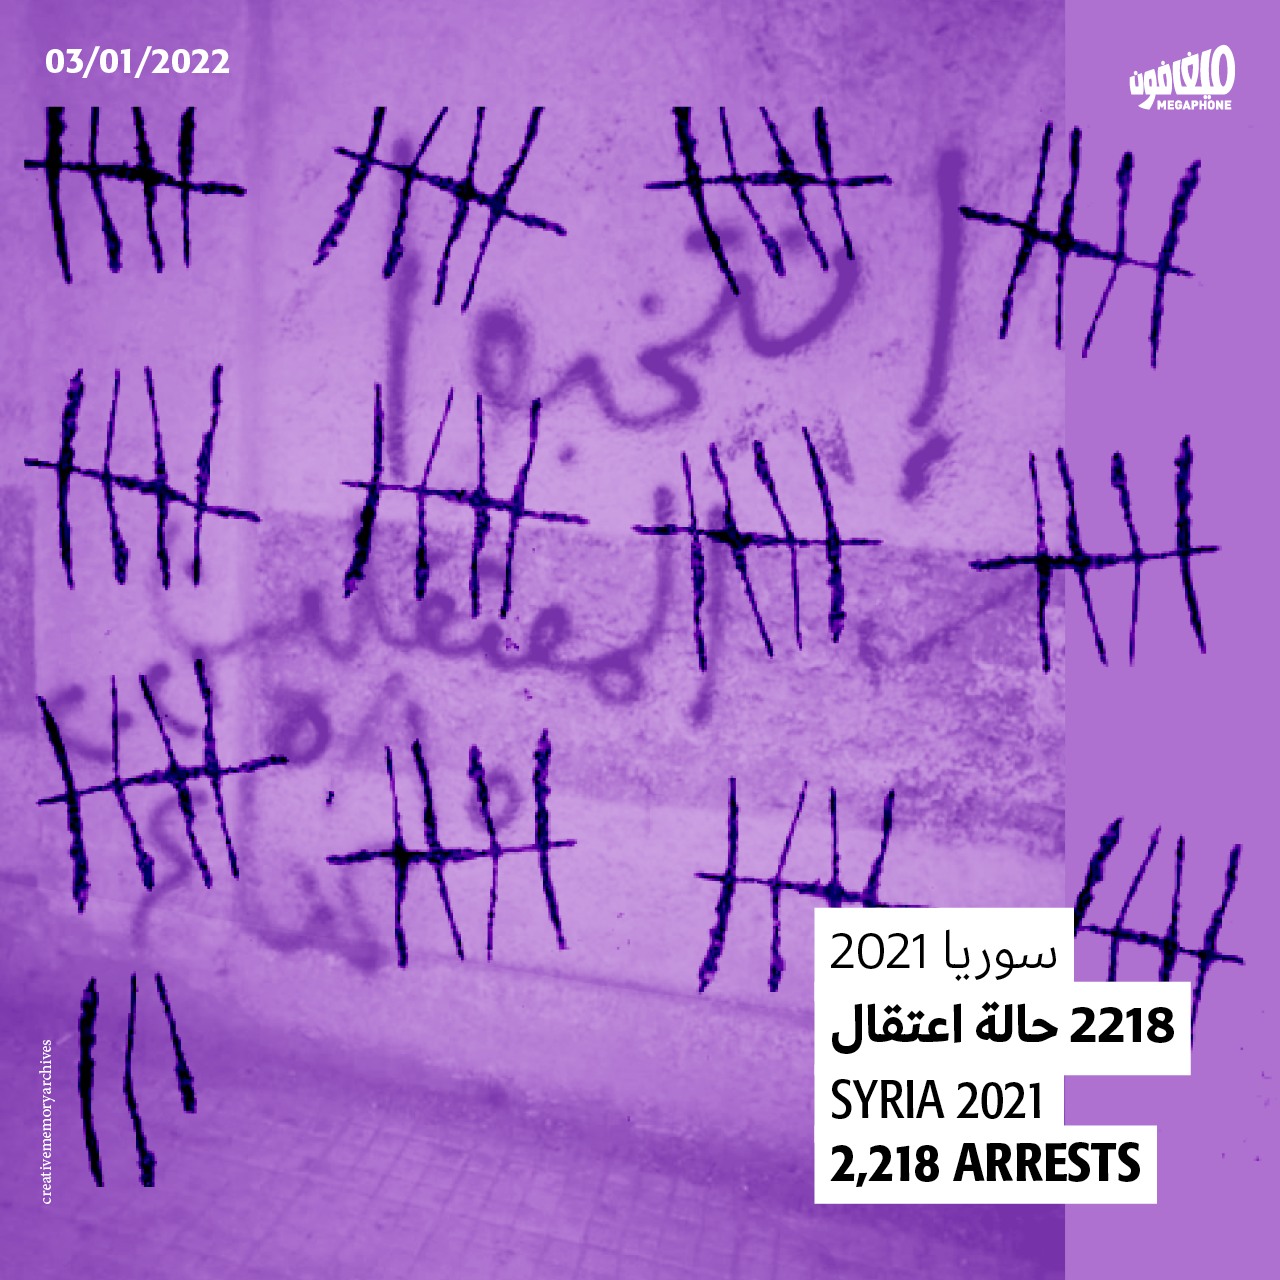 سوريا 2021: 2218 حالة اعتقال